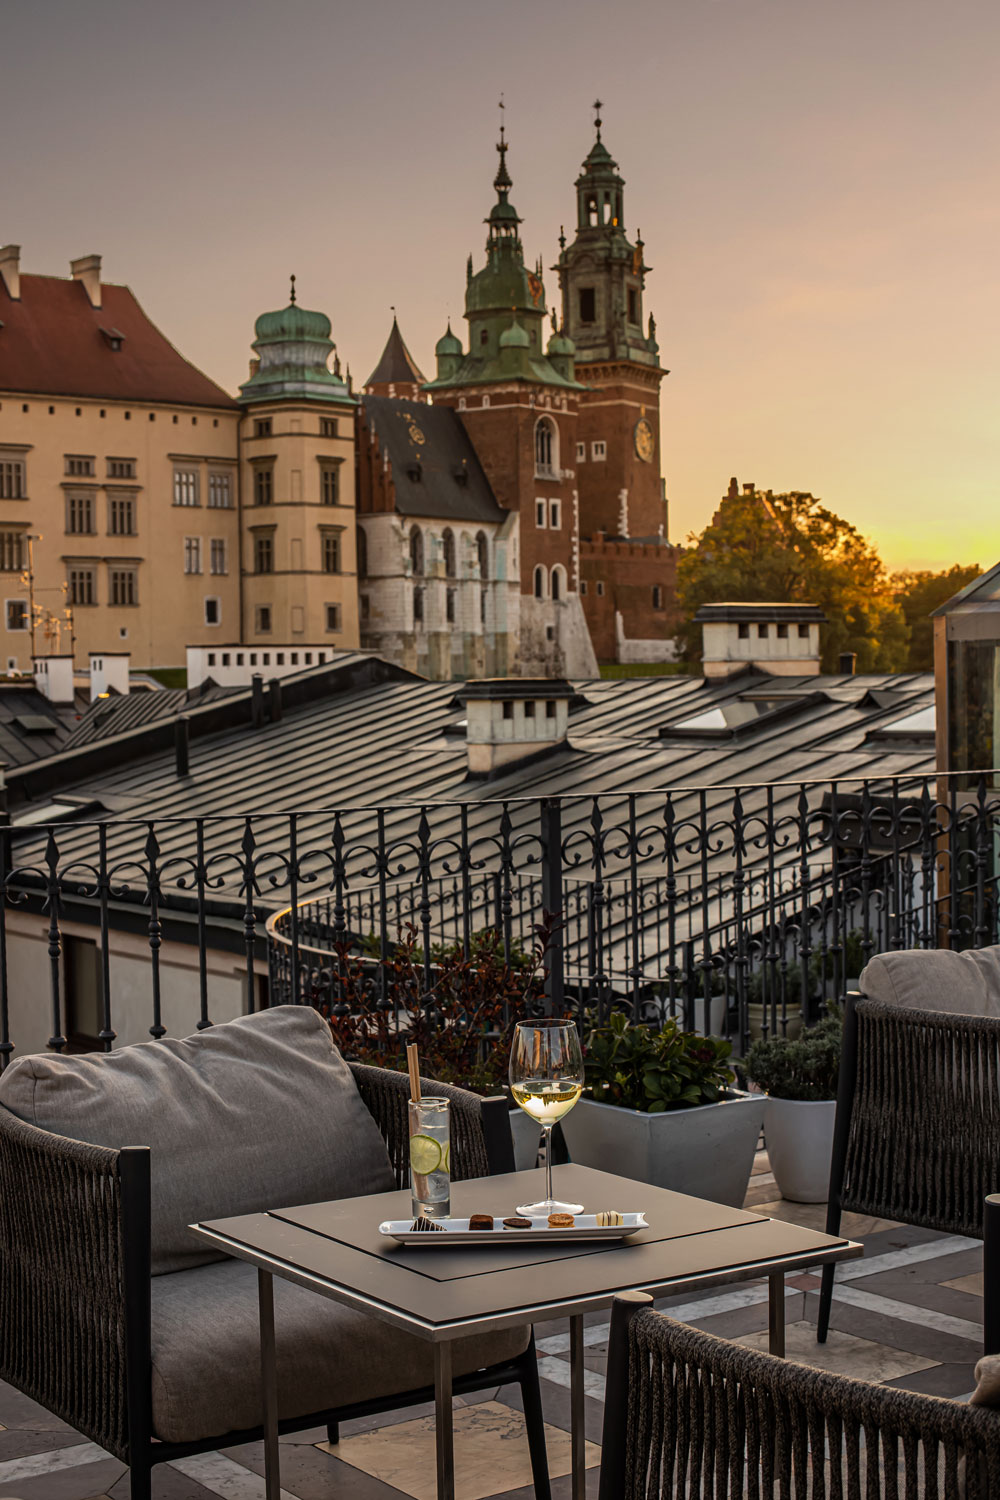 Hotel Copernicus things-to-do-in-krakow-poland-kelseyinlondon-kelsey-heinrichs-uk-travel-blogger-Kraków-travel-guide